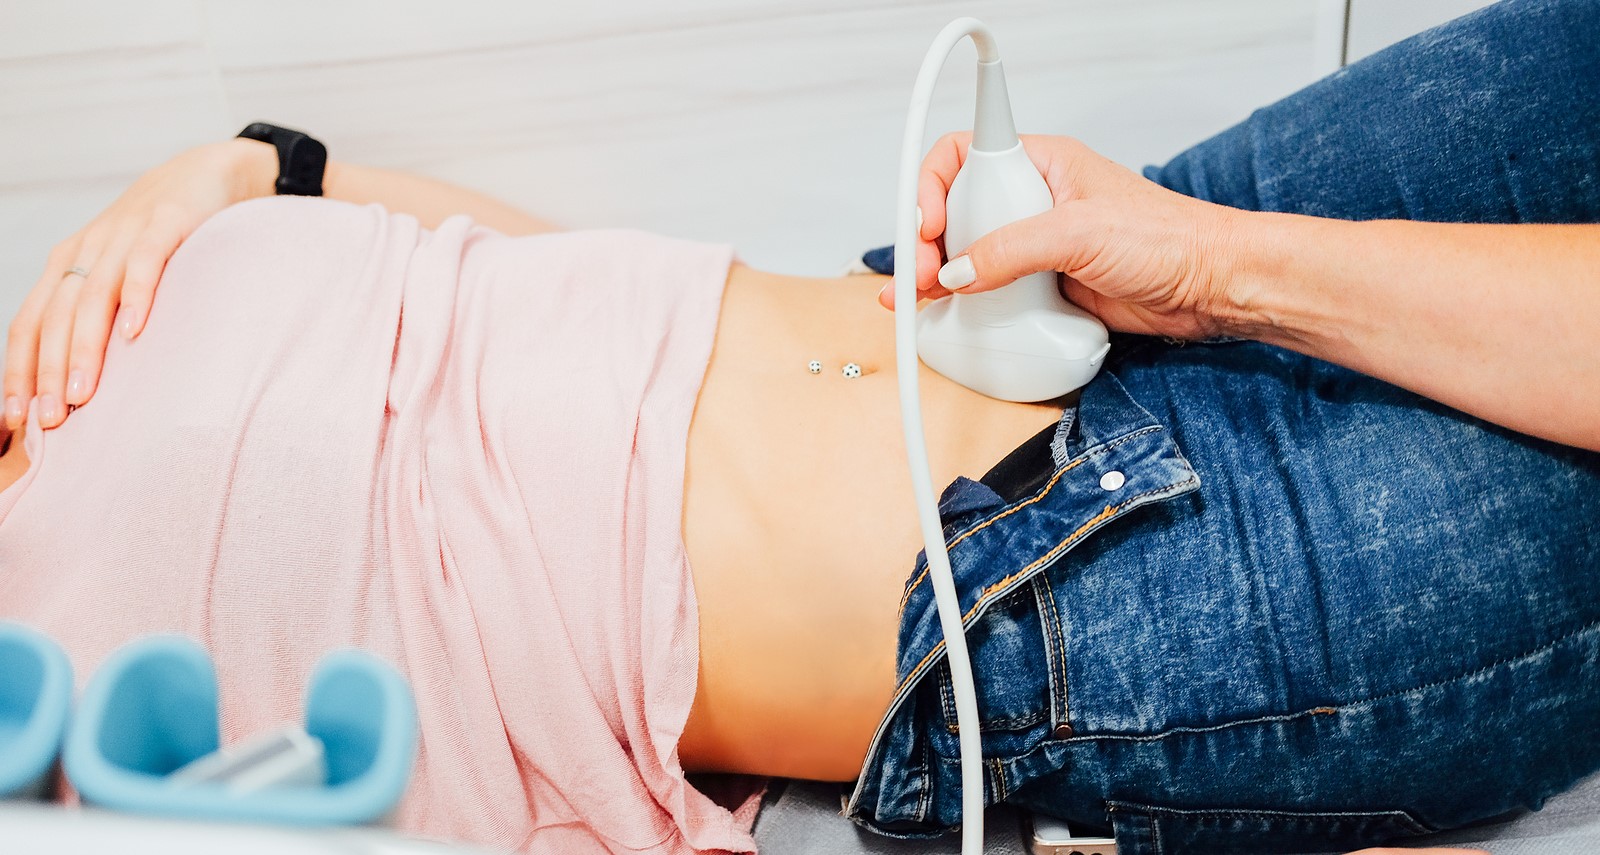 Ultrahang vizsgálat segíthet kimutatni a petefészekcisztát